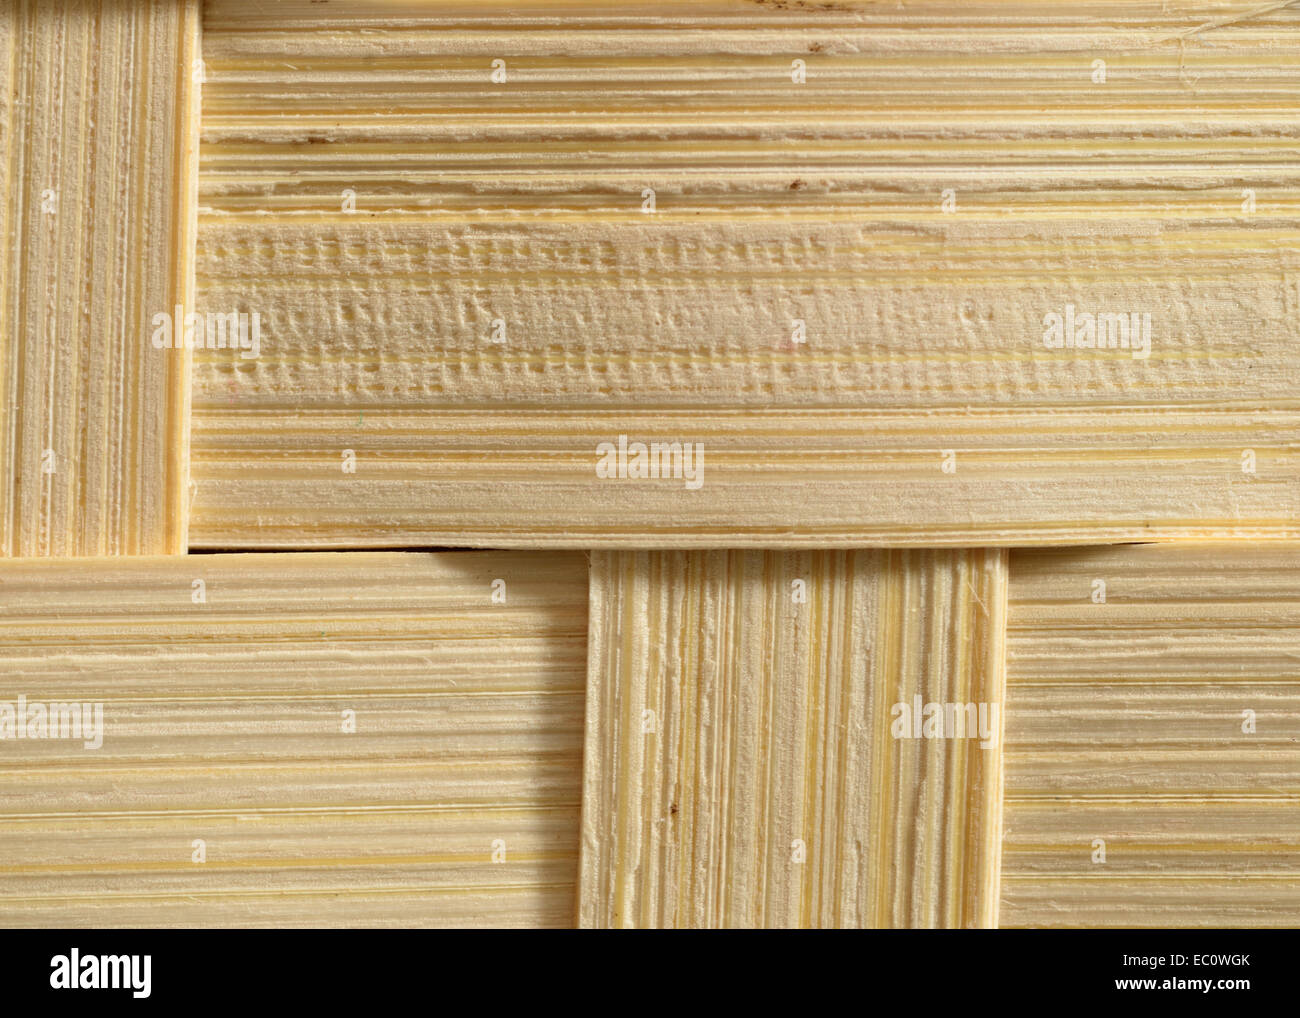 Ein Makro Nahaufnahme von Holz Korb Flechten Getreide für den Hintergrund oder Kopie. Stockfoto